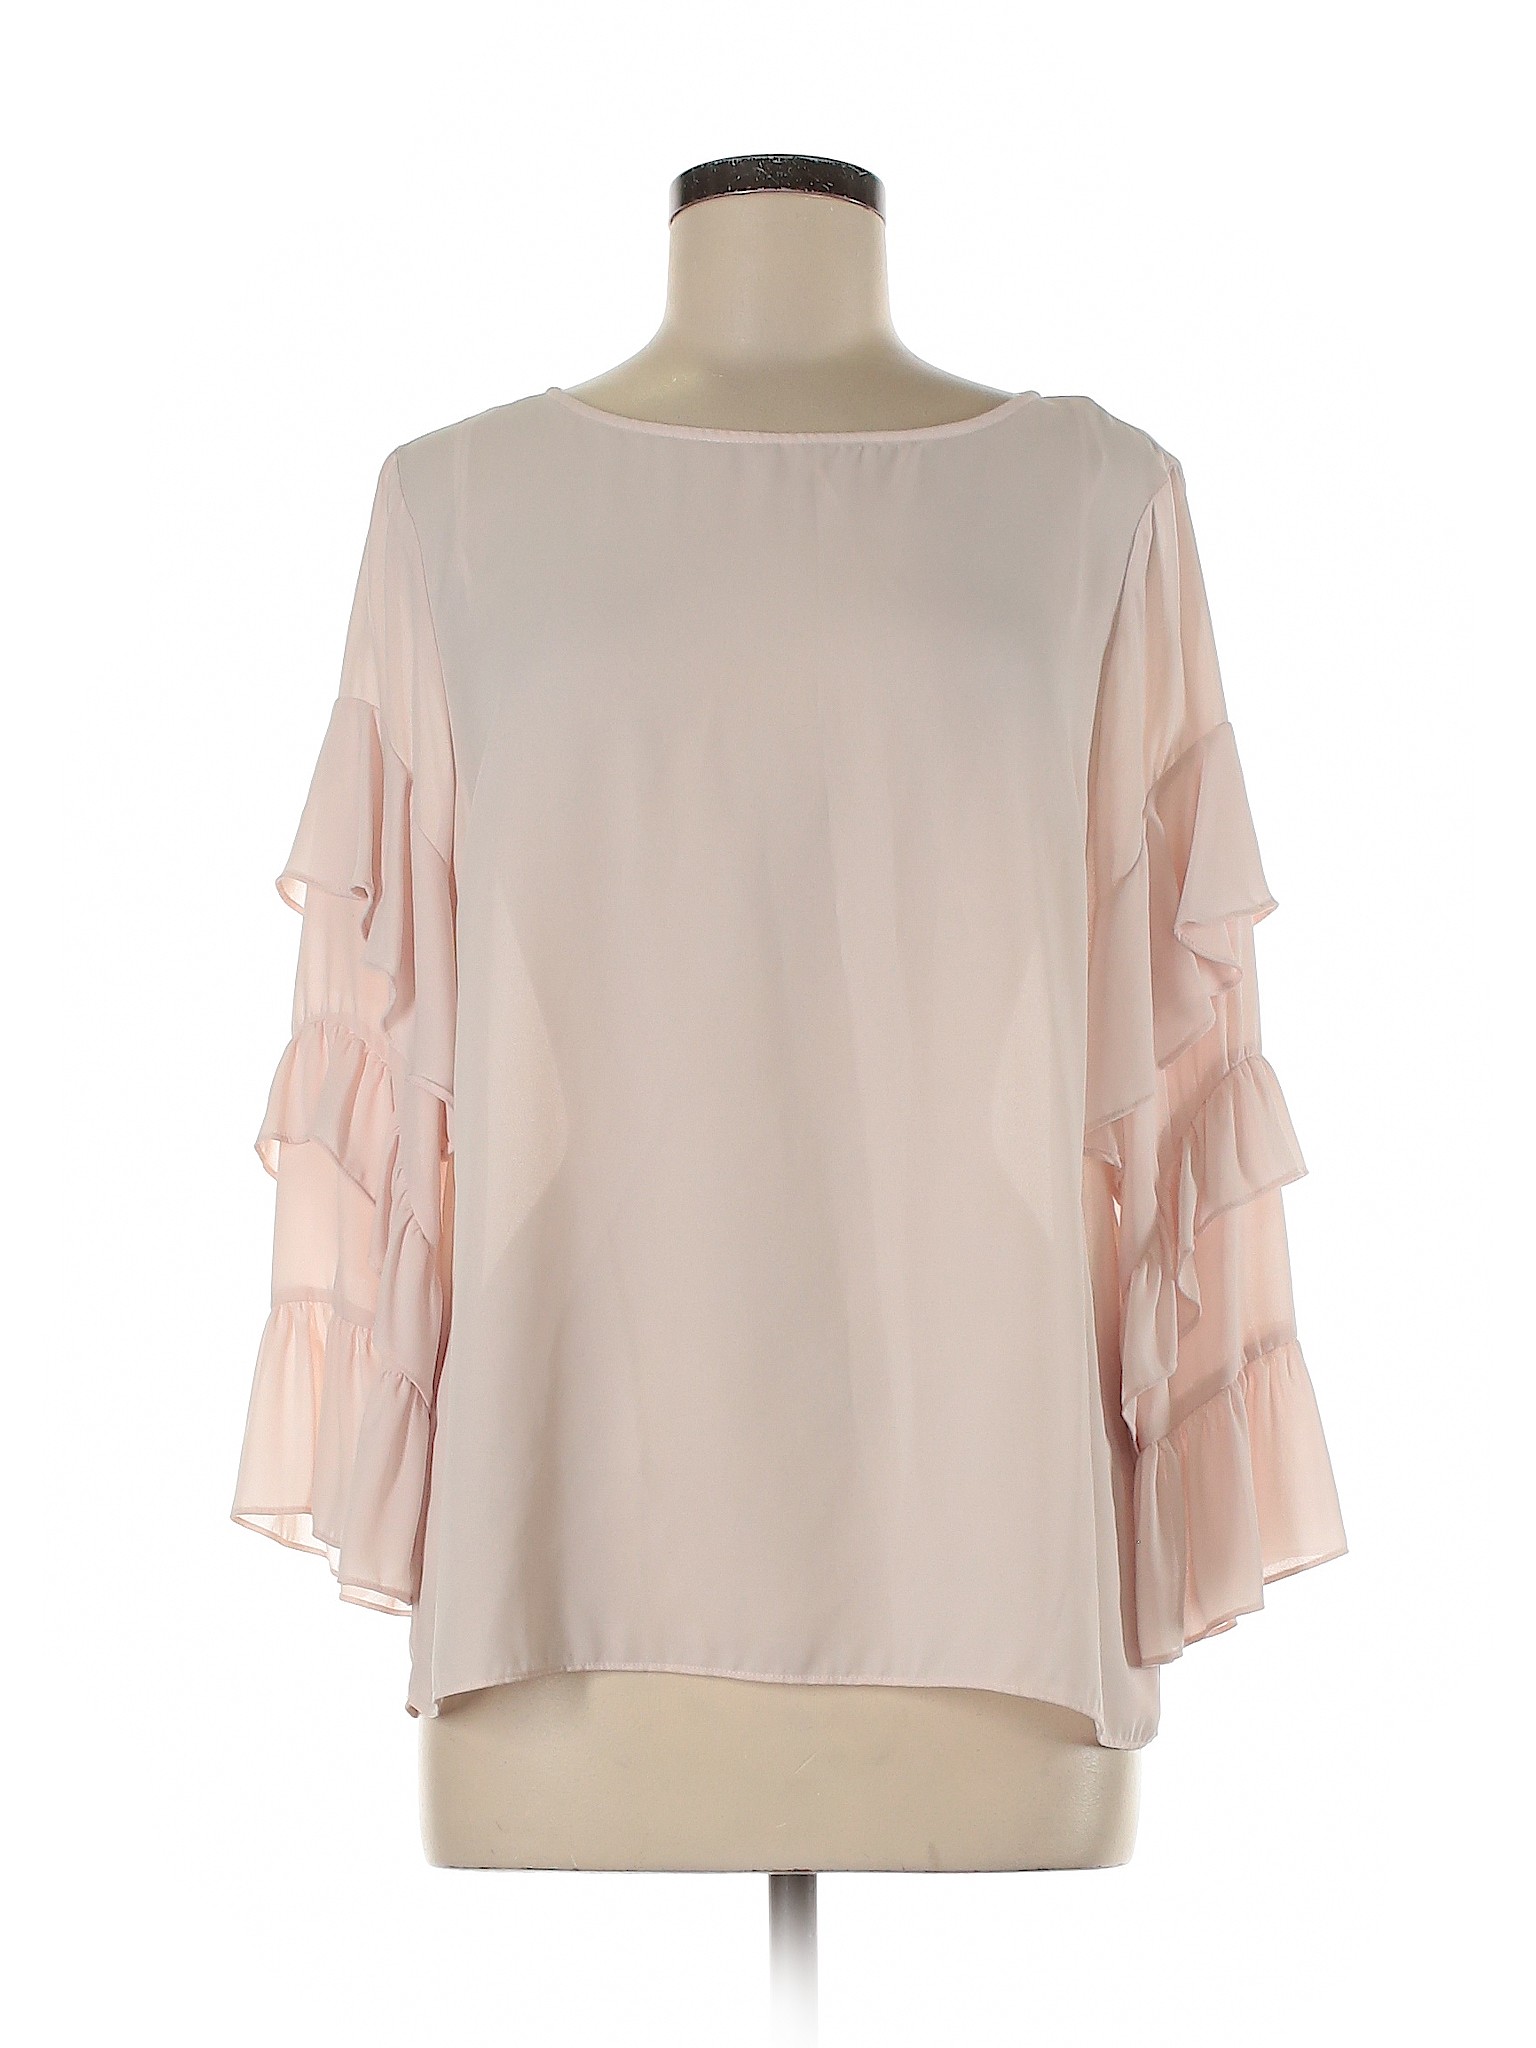 CeCe Women Pink 3/4 Sleeve Blouse M | eBay